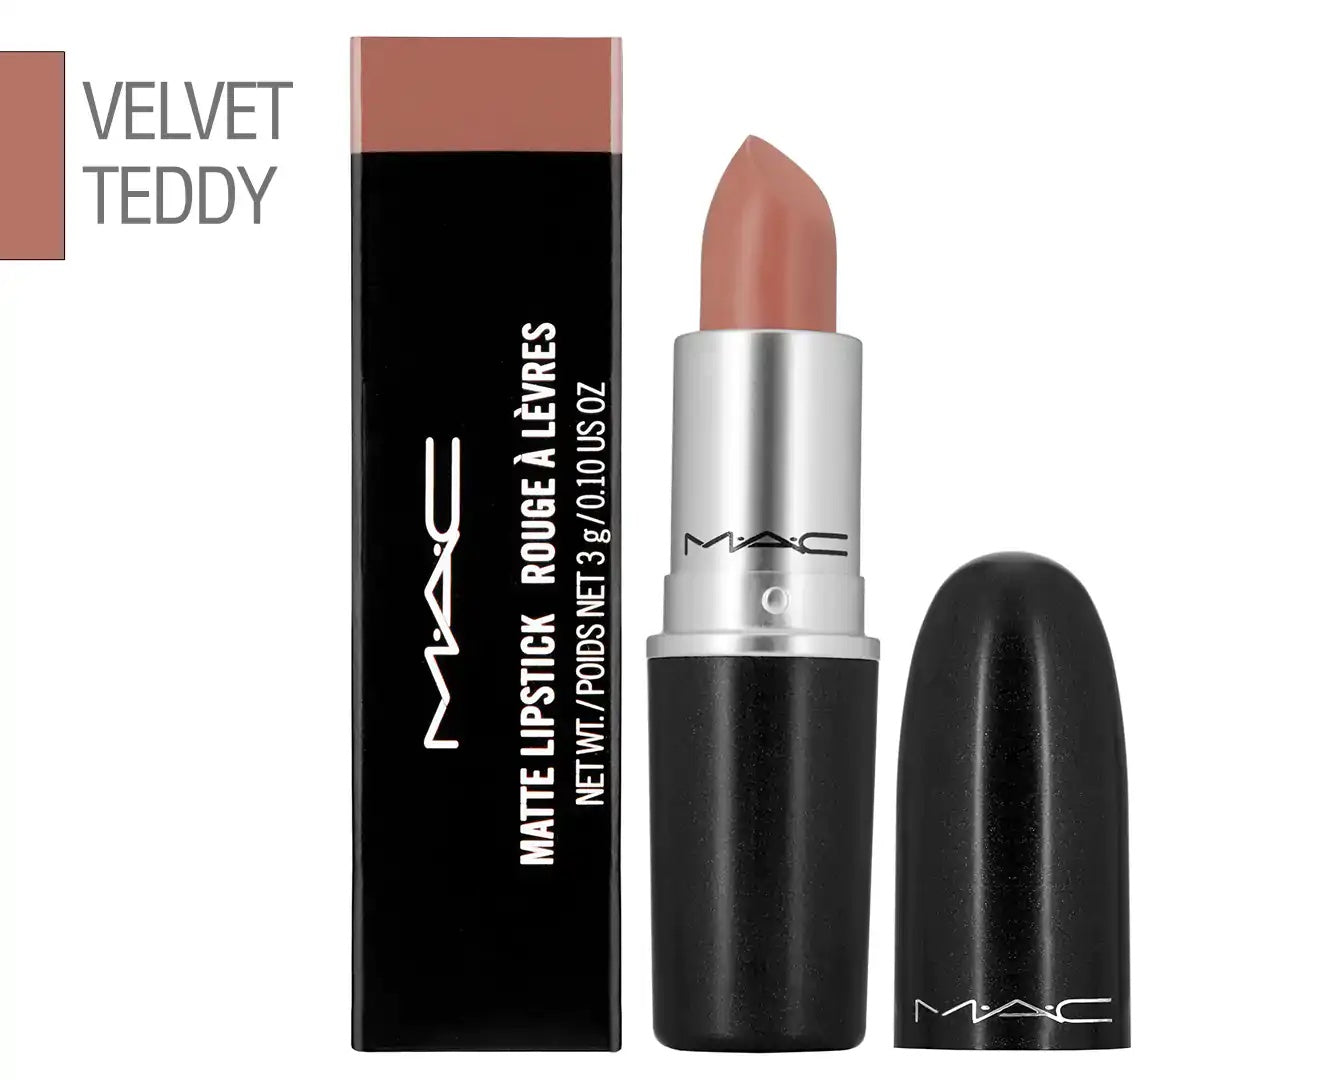 M·A·C Velvet Teddy Lipstick 3g/0.1 us.oz Beige Brown Matte Cosmetics #617